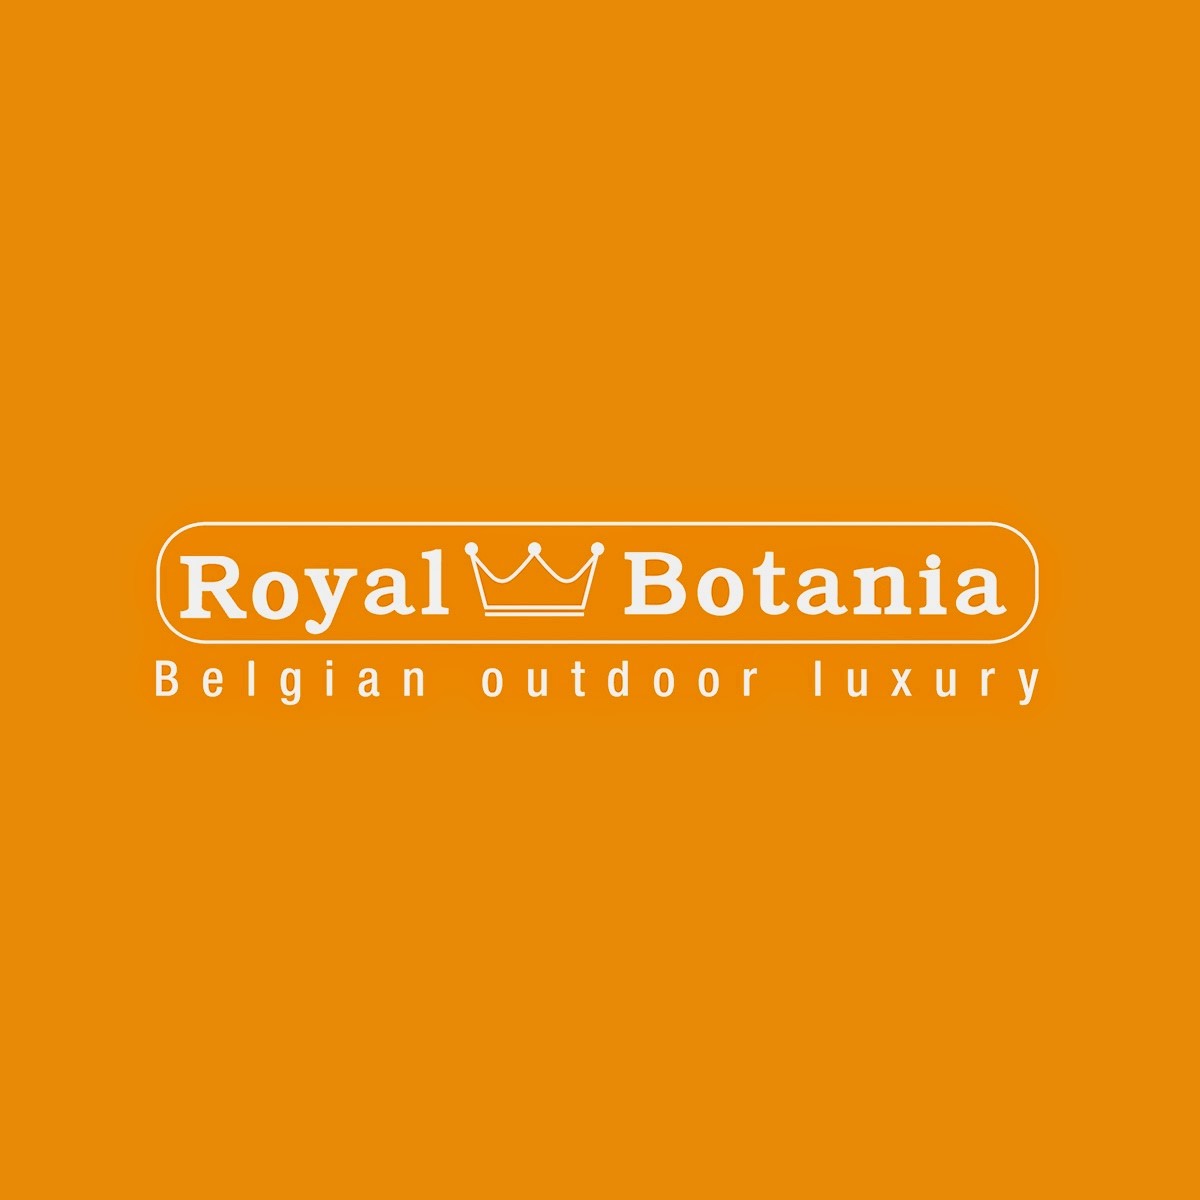 Royal botania